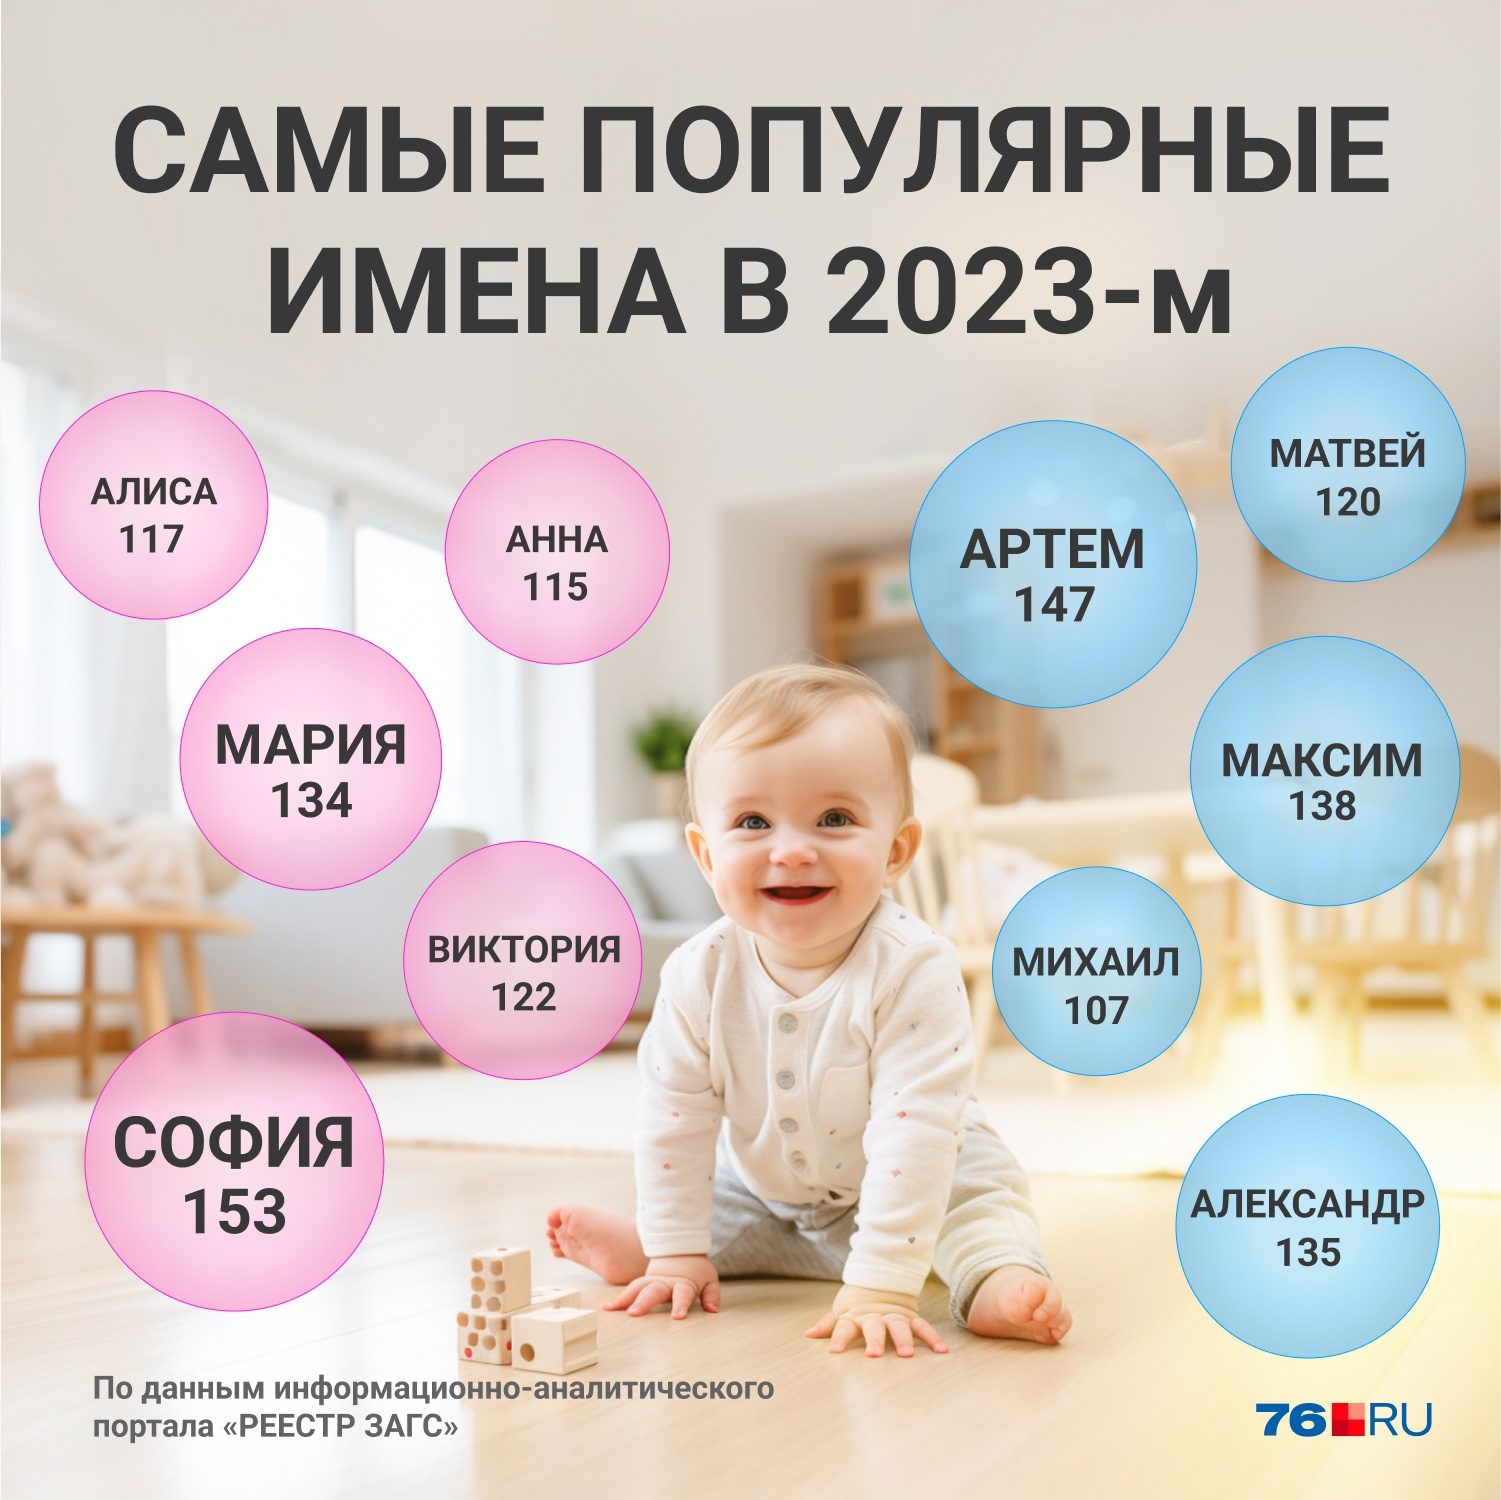 Московский ЗАГС назвал самые популярные и необычные имена новорожденных в 2023 году